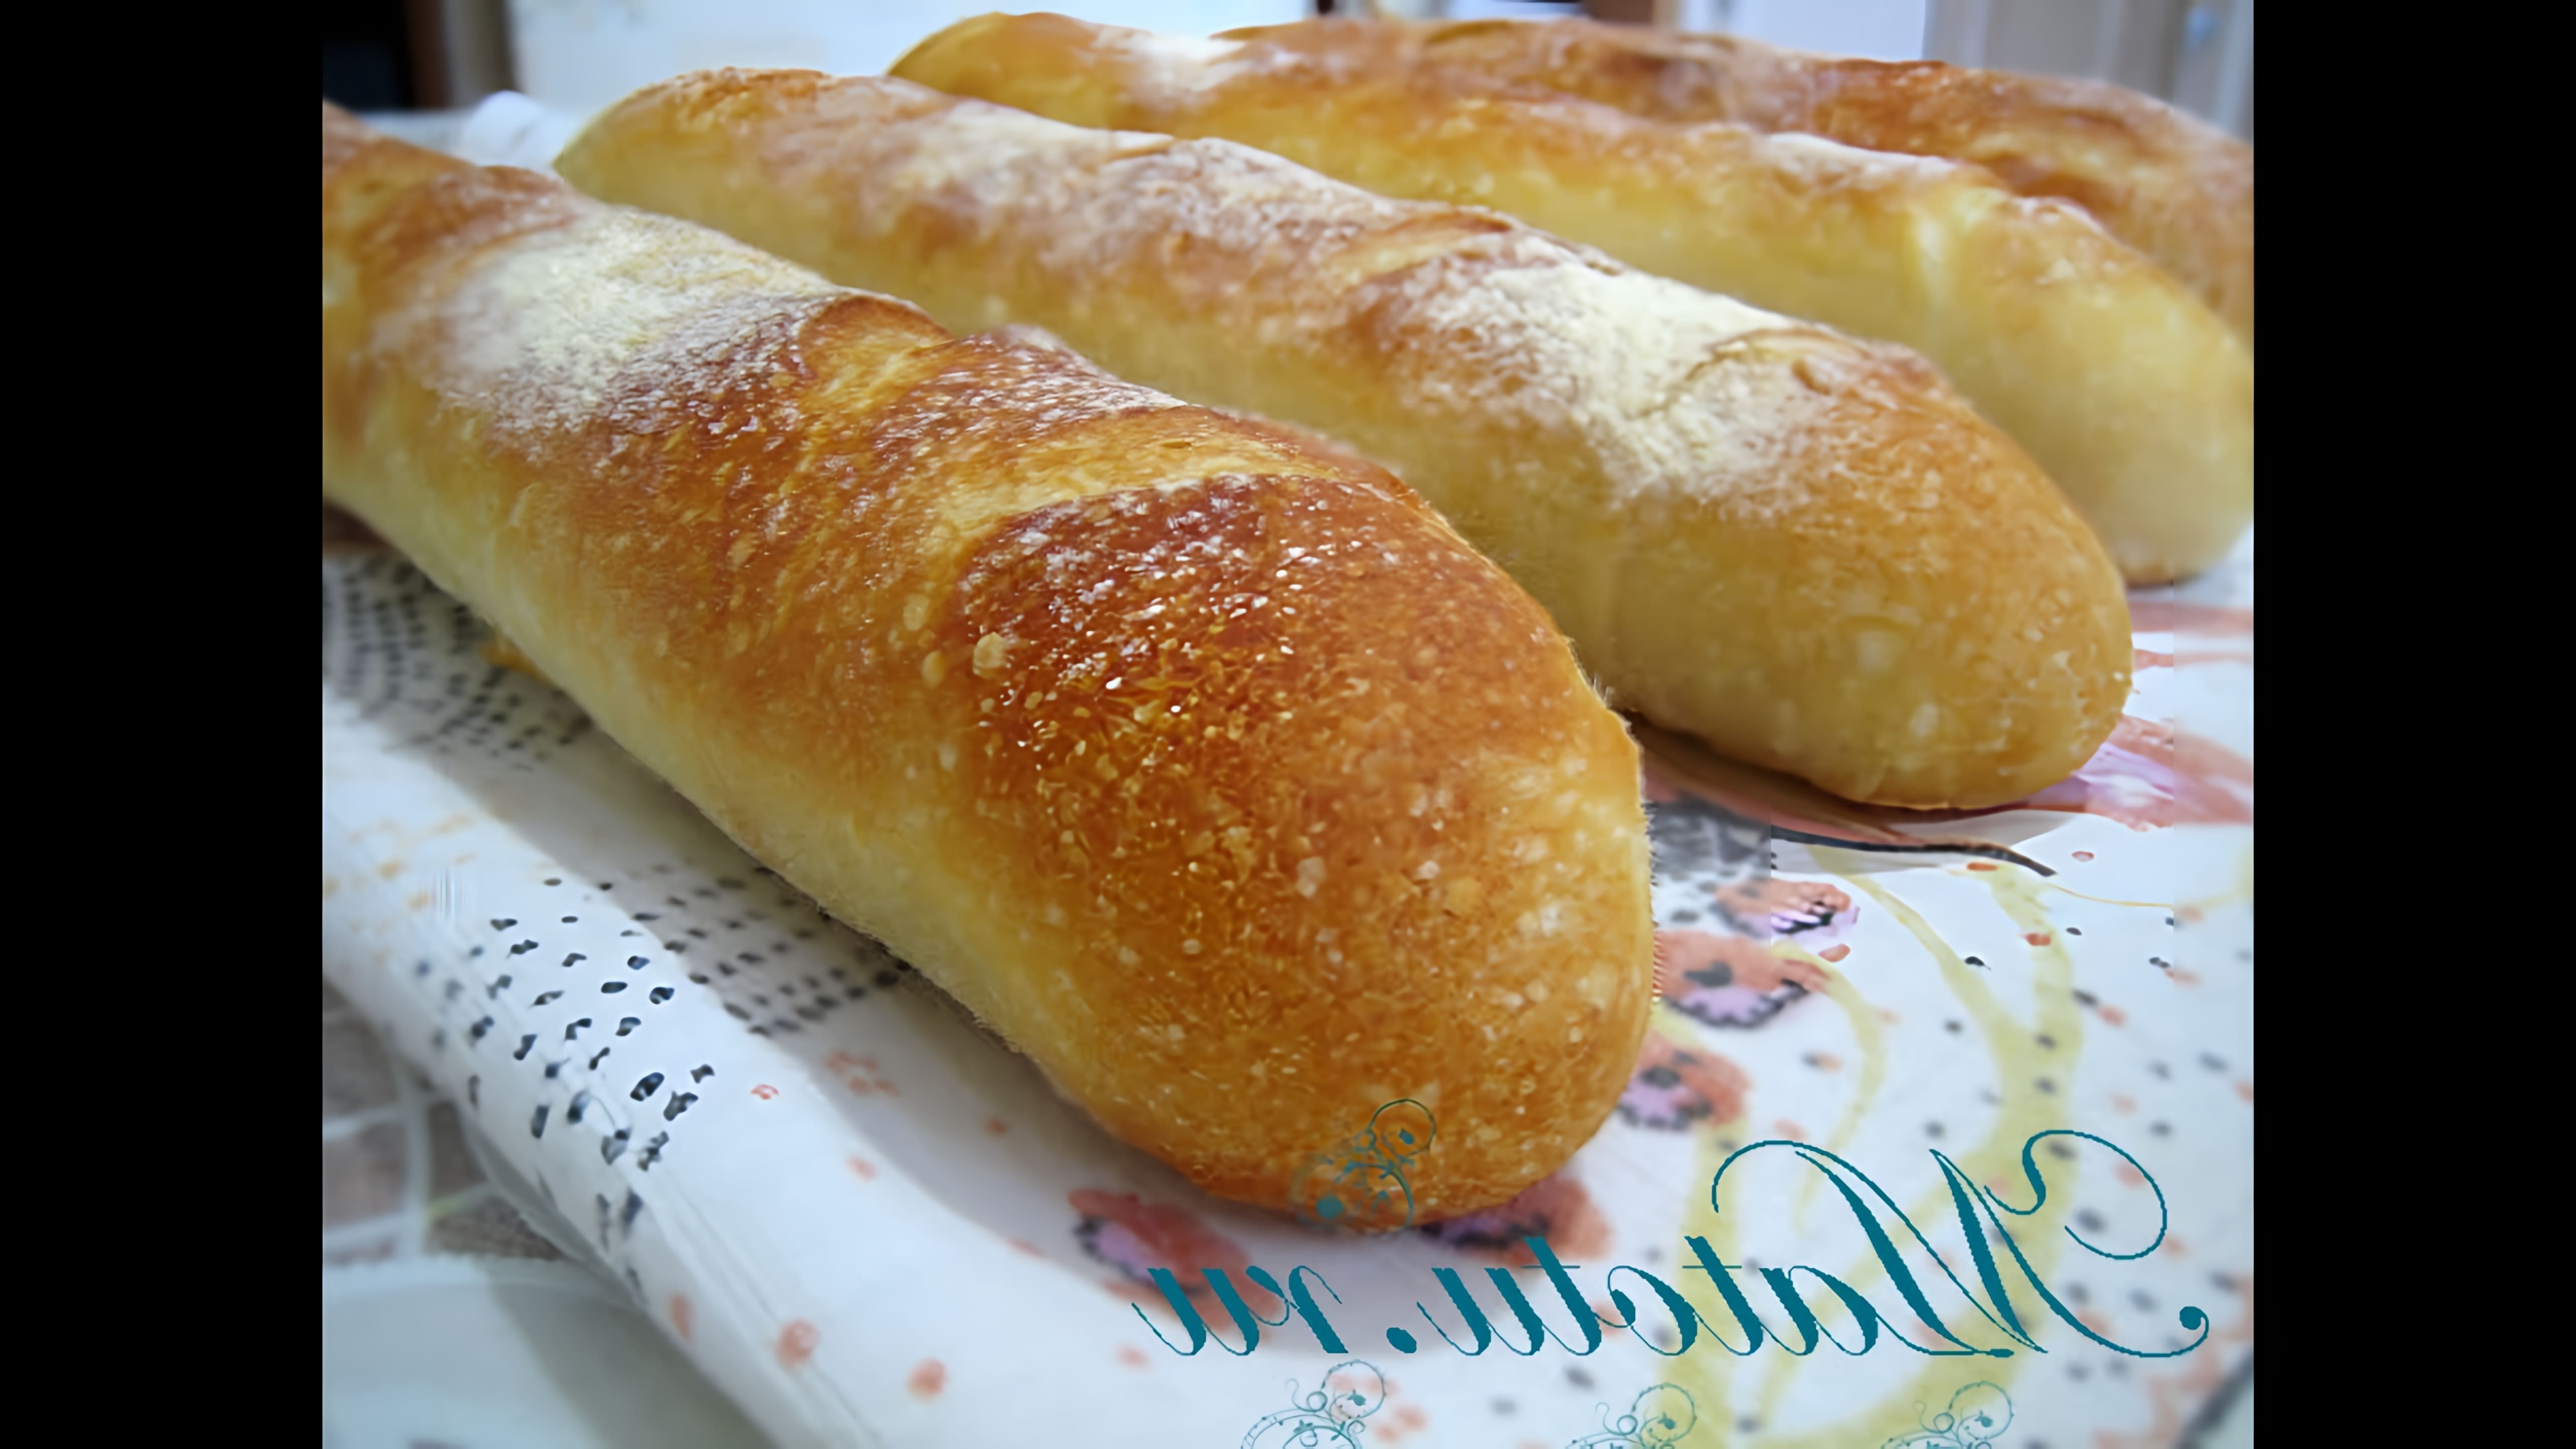 Рецепт французского багета - это видео-ролик, который демонстрирует процесс приготовления традиционного французского хлеба